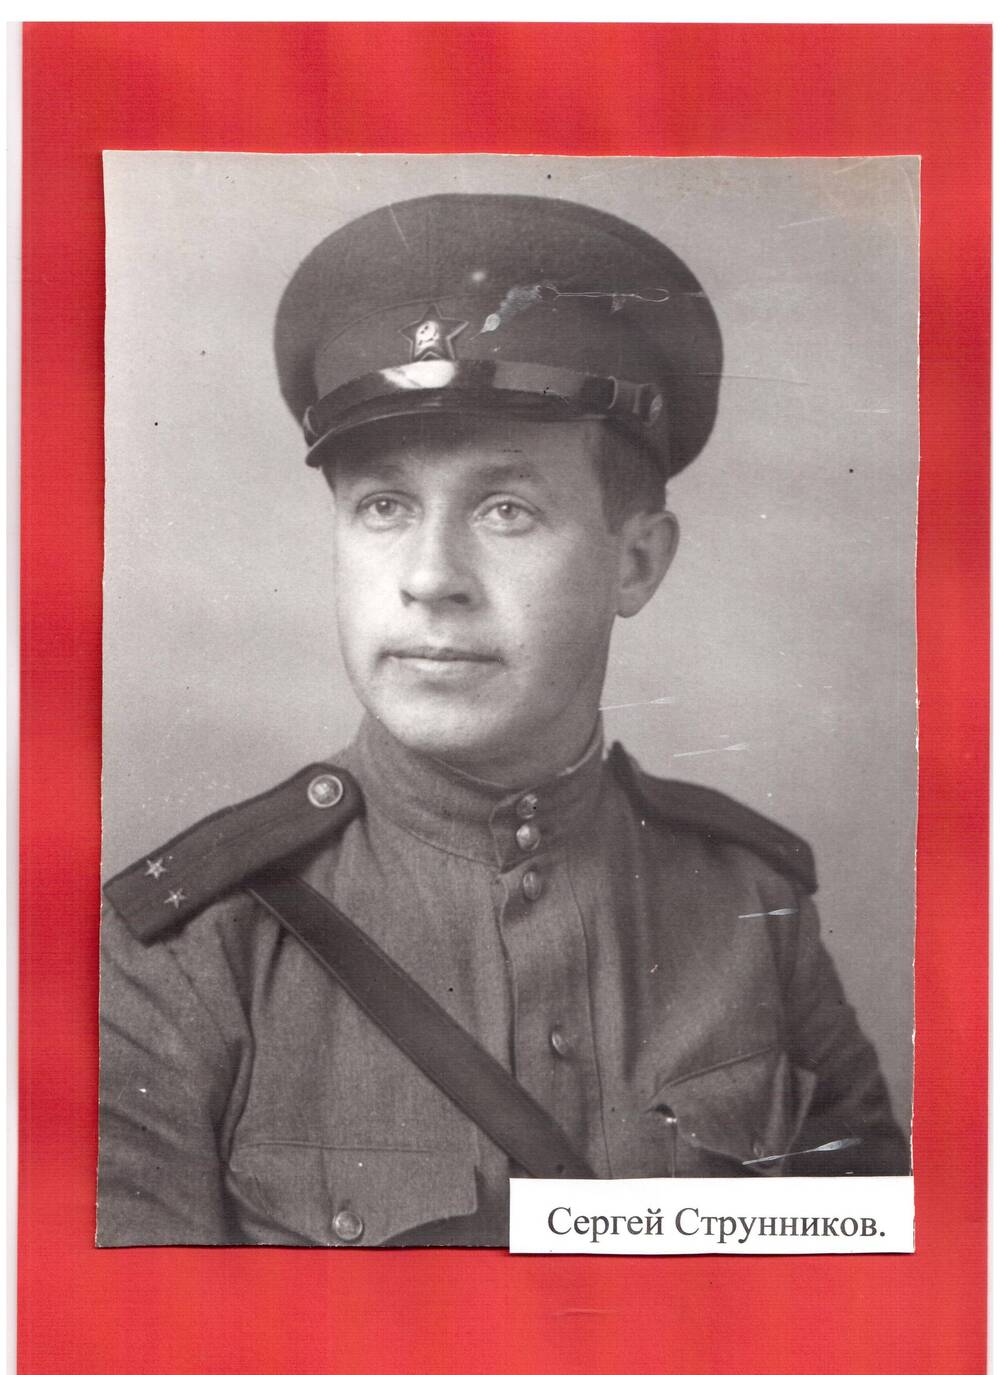 Фотография.С.Струнников, военный фотокорреспондент газеты Правда. Не позднее 1944г.